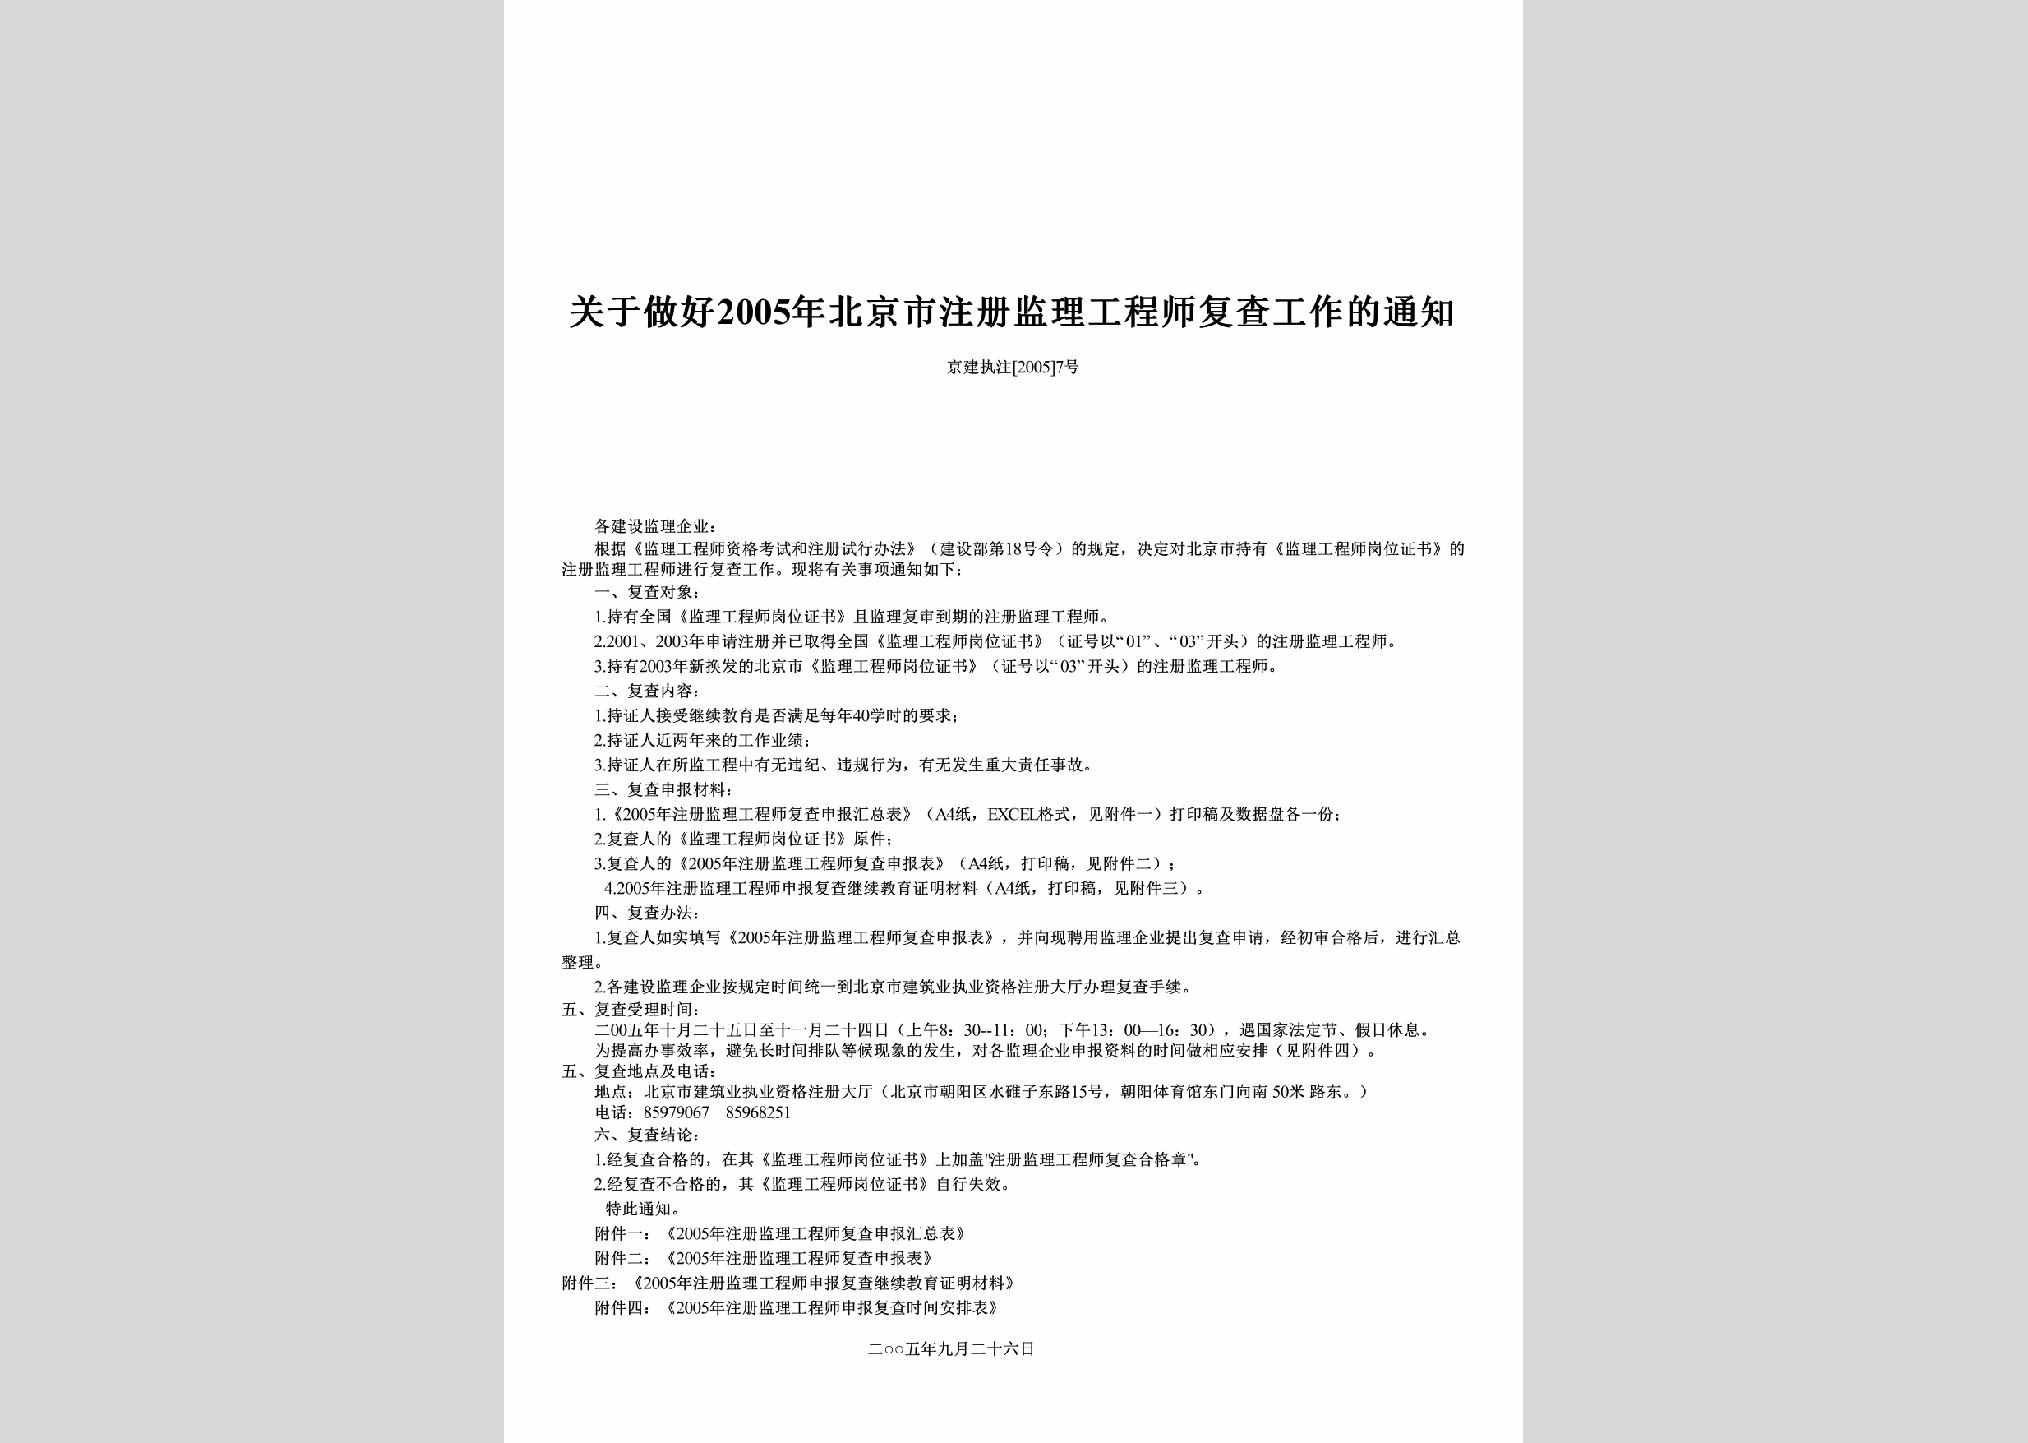 京建执注[2005]7号：关于做好2005年北京市注册监理工程师复查工作的通知